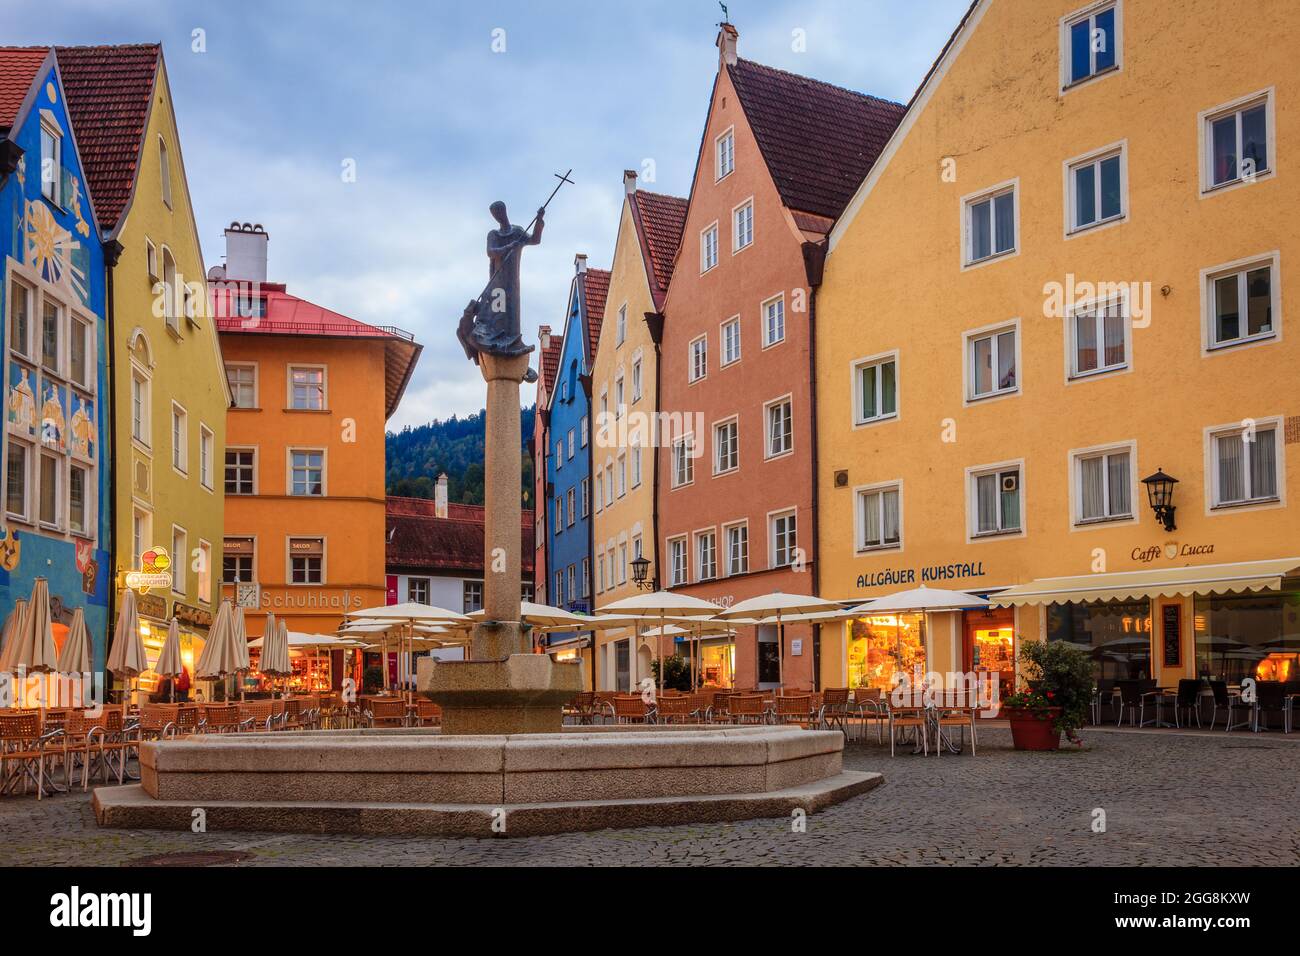 Füssen, 27. September 2015: Zentraler Platz in Füssen mit einem Wahrzeichen-Brunnen - Stadtbrunnen Stockfoto